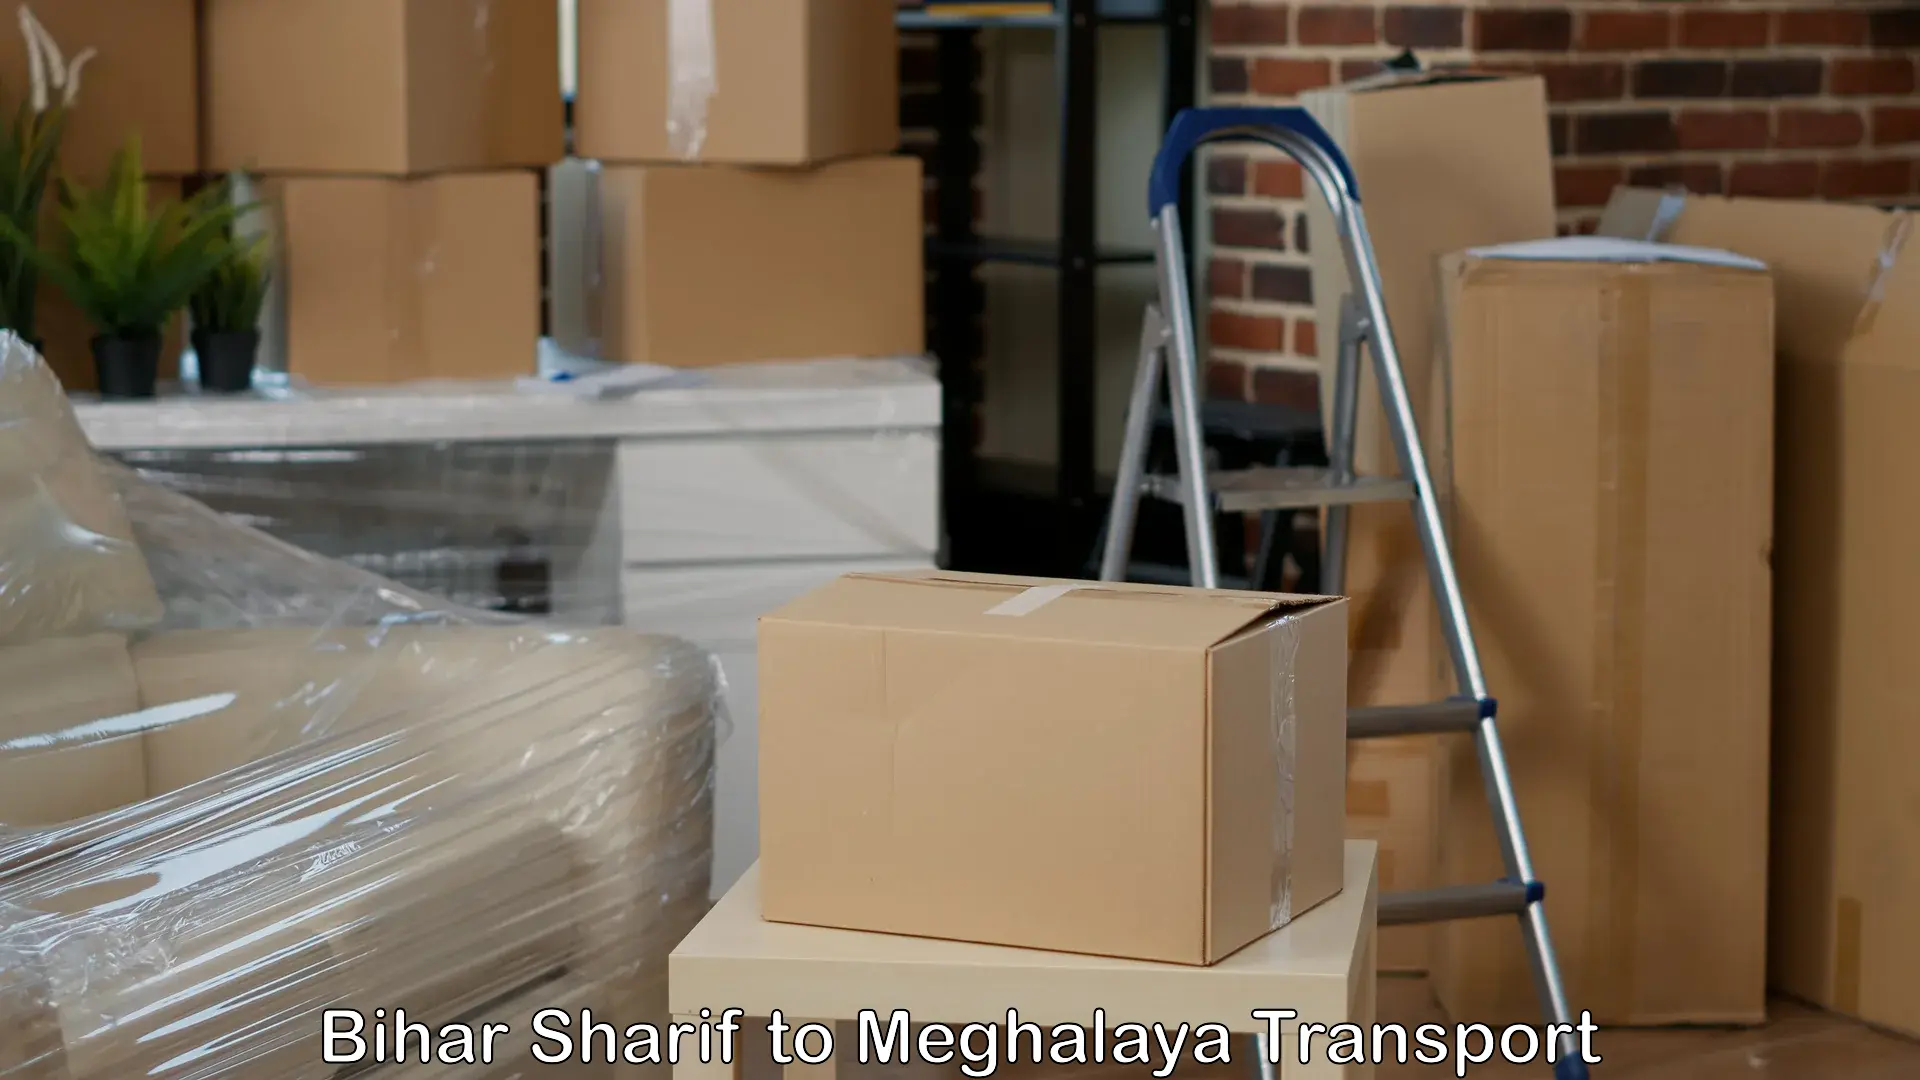 Shipping partner in Bihar Sharif to Ri Bhoi